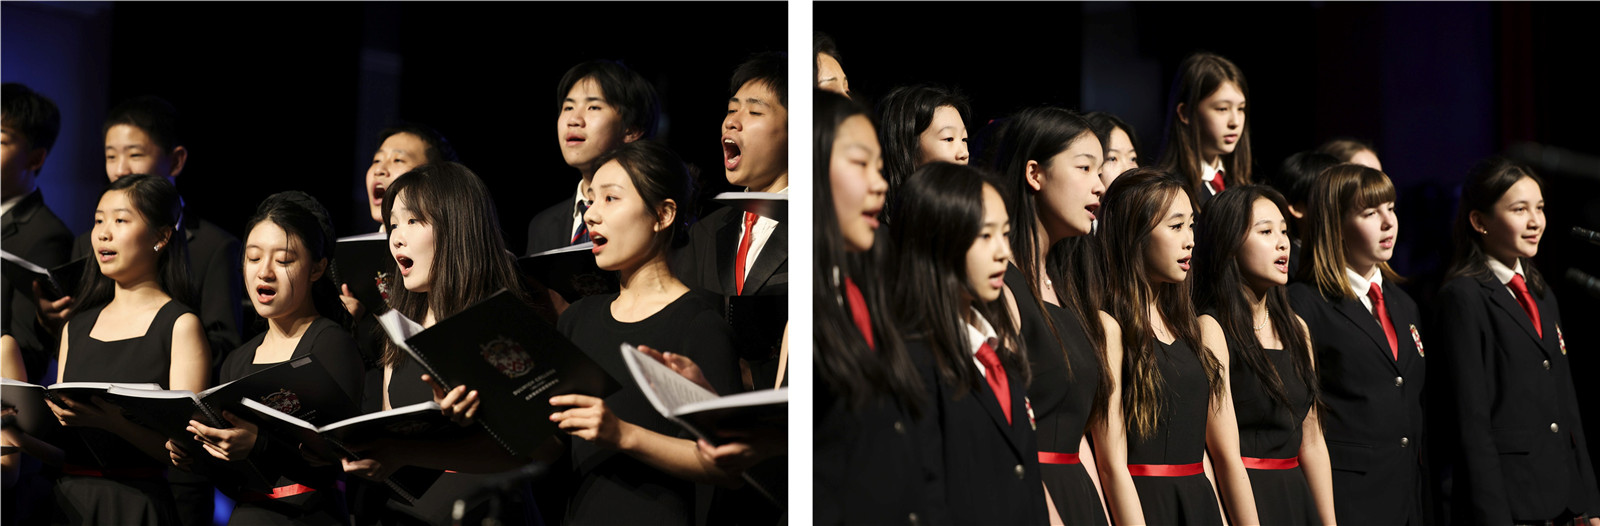 北京德威中学合唱团演唱